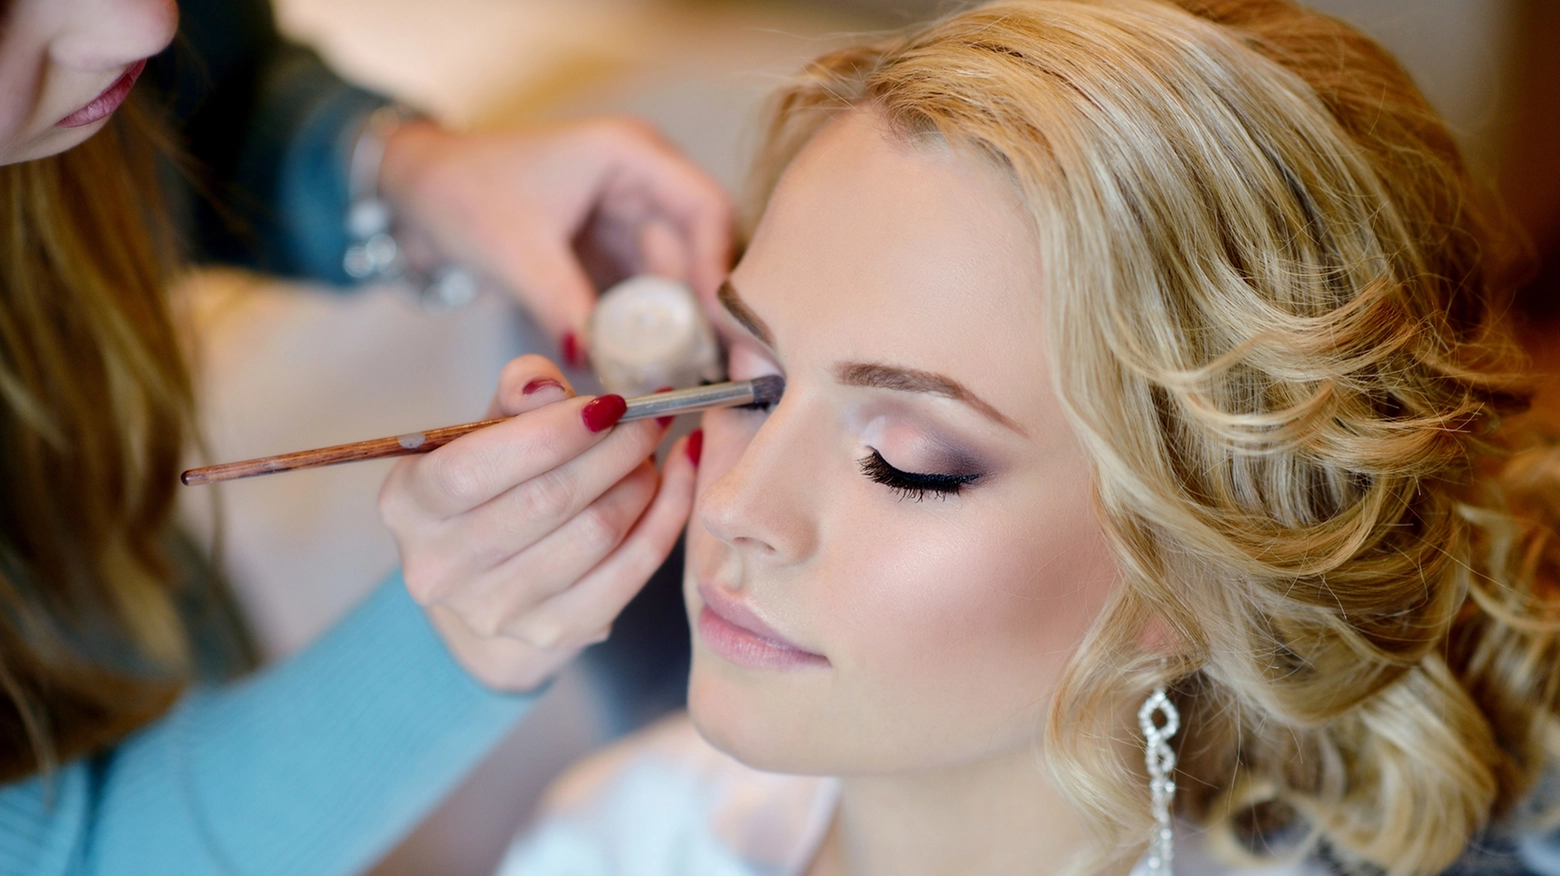 Il make-up per le nozze deve essere naturale, leggero e luminoso, abbinato a una manicure impeccabile